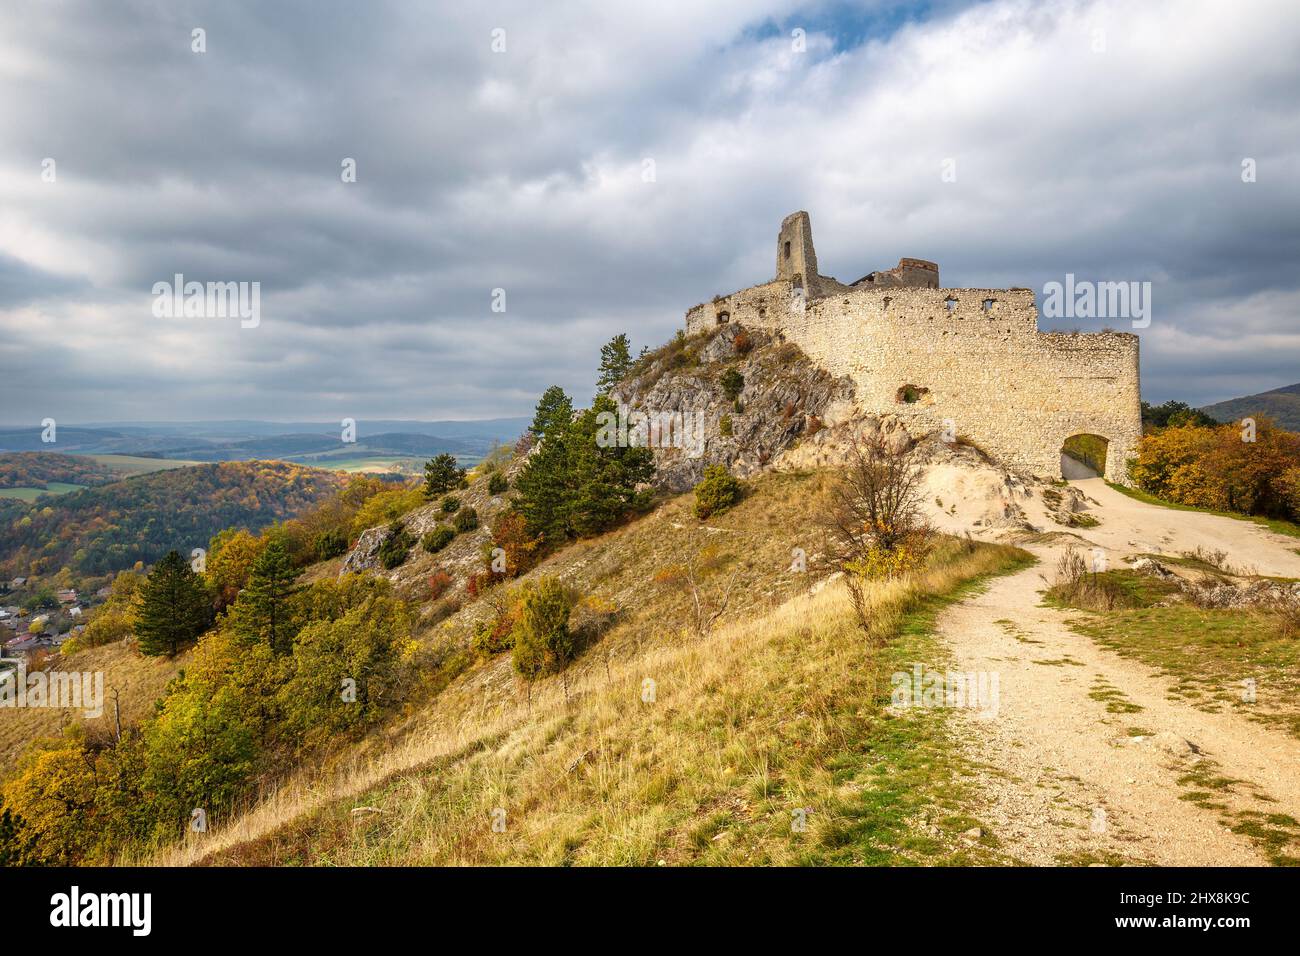 Château de Cachtice avec paysage environnant en automne, Slovaquie, Europe. Banque D'Images